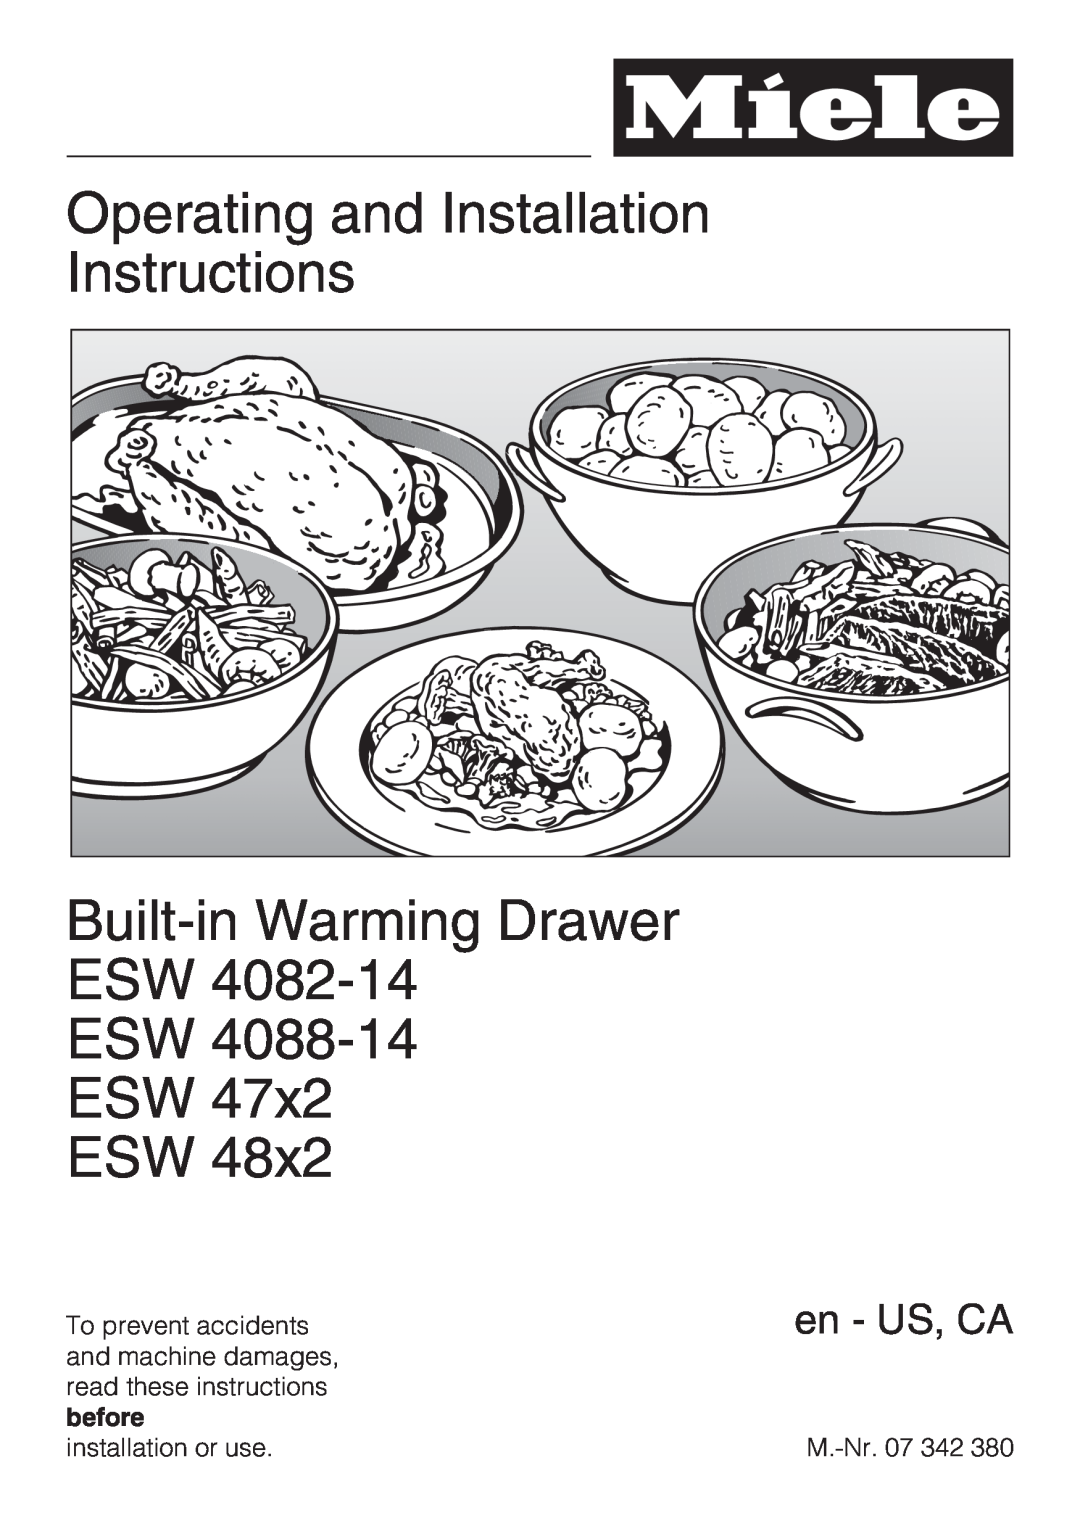 Miele ESW4082-14 installation instructions Operating and Installation Instructions, Built-inWarming Drawer ESW ESW ESW ESW 